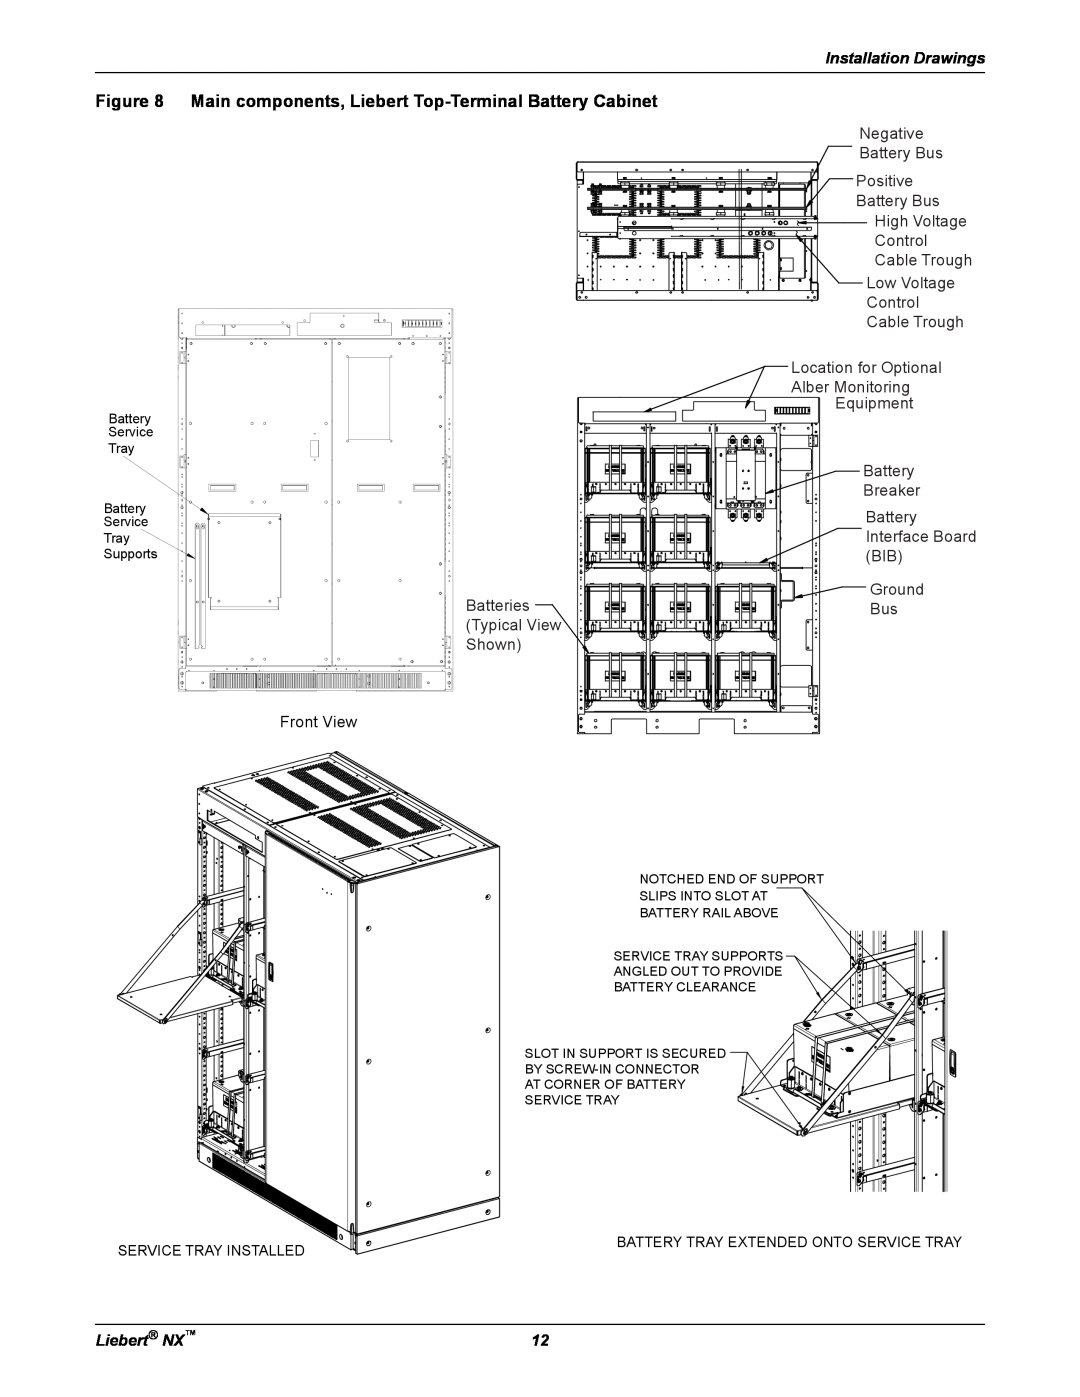 Emerson 225-600KVA Main components, Liebert Top-Terminal Battery Cabinet, Installation Drawings, Front View, Liebert NX 